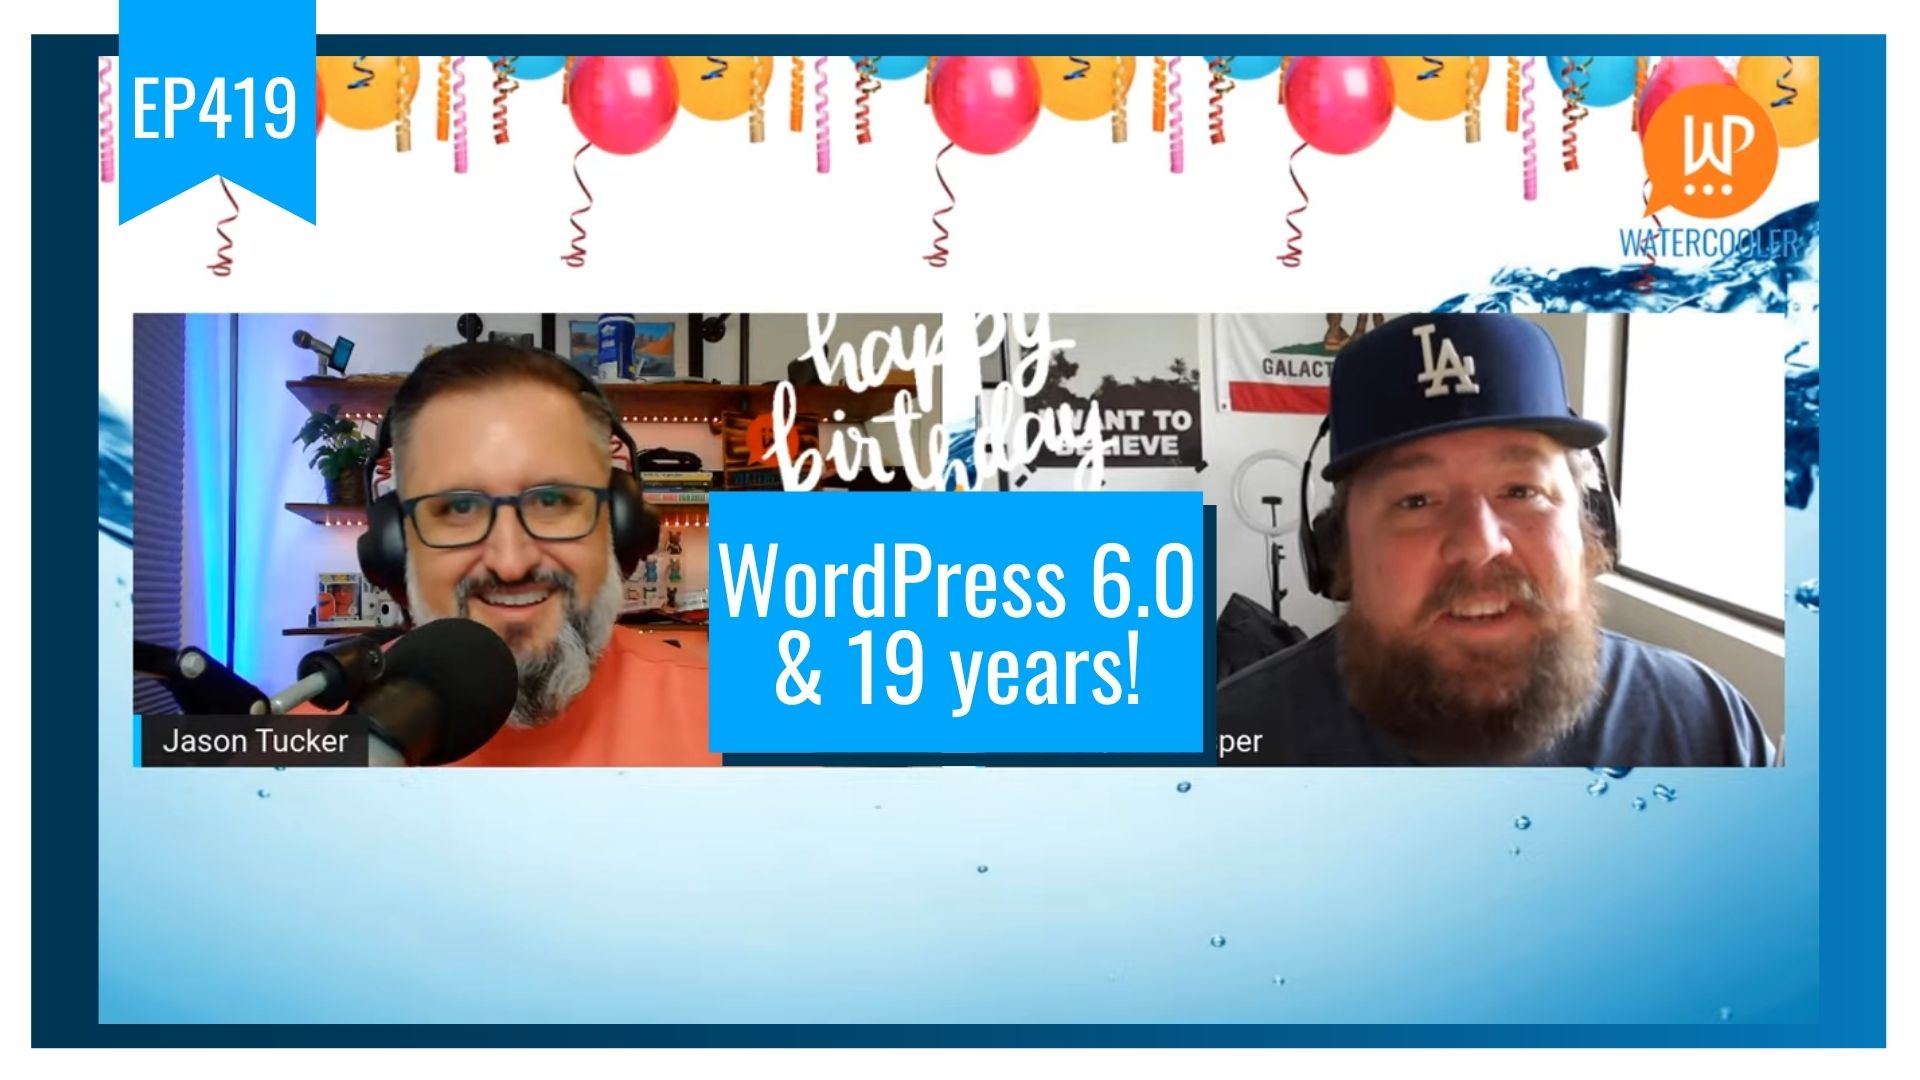 EP419 – WordPress 6.0 & 19 years!